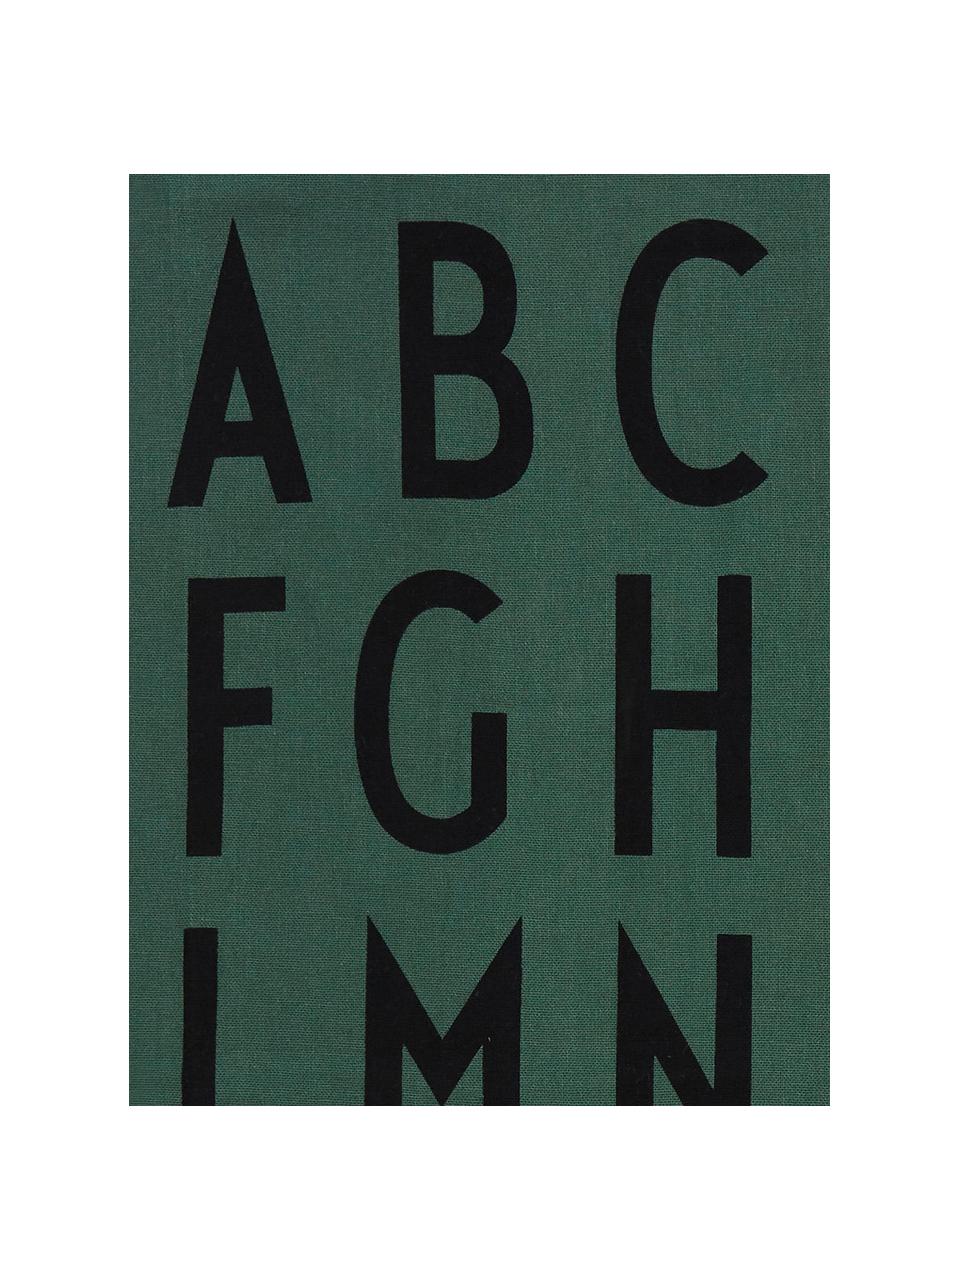 Utierka s dizajnovými písmenami Classic, 2 ks, Zelená, čierna